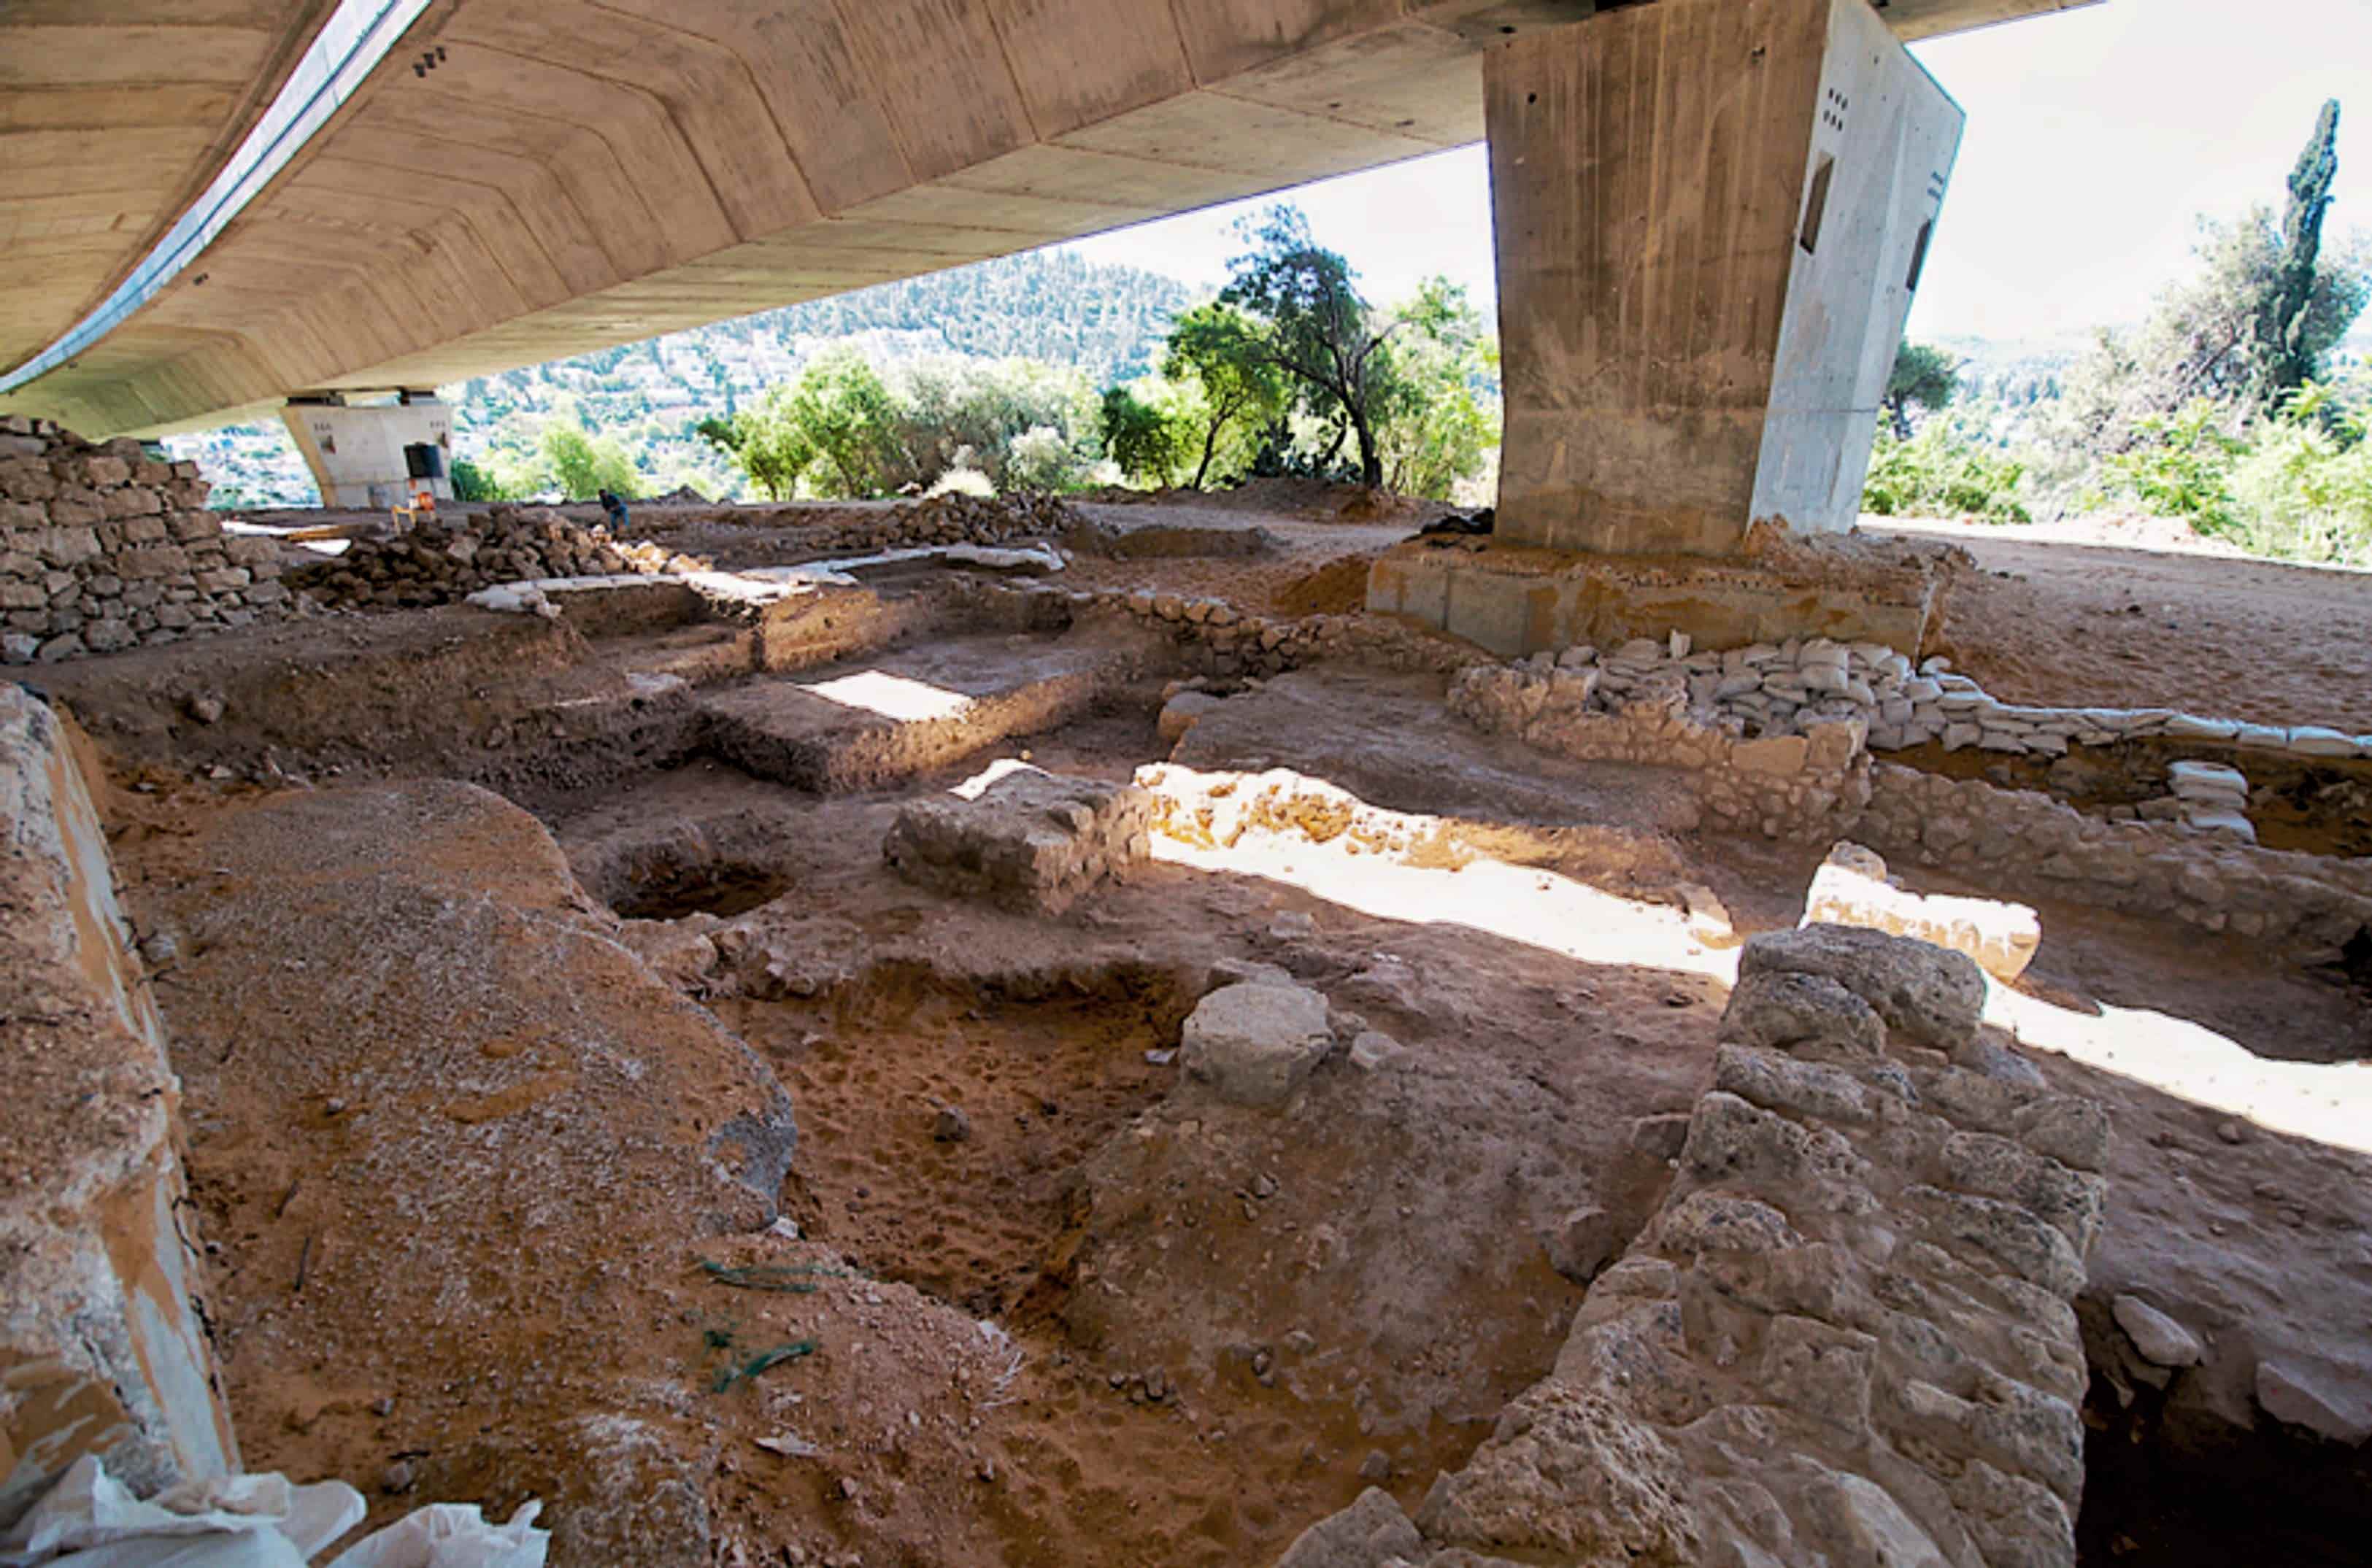 ਯਰੂਸ਼ਲਮ ਦੇ ਨੇੜੇ 9,000 ਸਾਲ ਪੁਰਾਣੀ ਸਾਈਟ ਪੂਰਵ-ਇਤਿਹਾਸਕ ਬੰਦੋਬਸਤ 2 ਦਾ "ਬਿਗ ਬੈਂਗ" ਹੈ